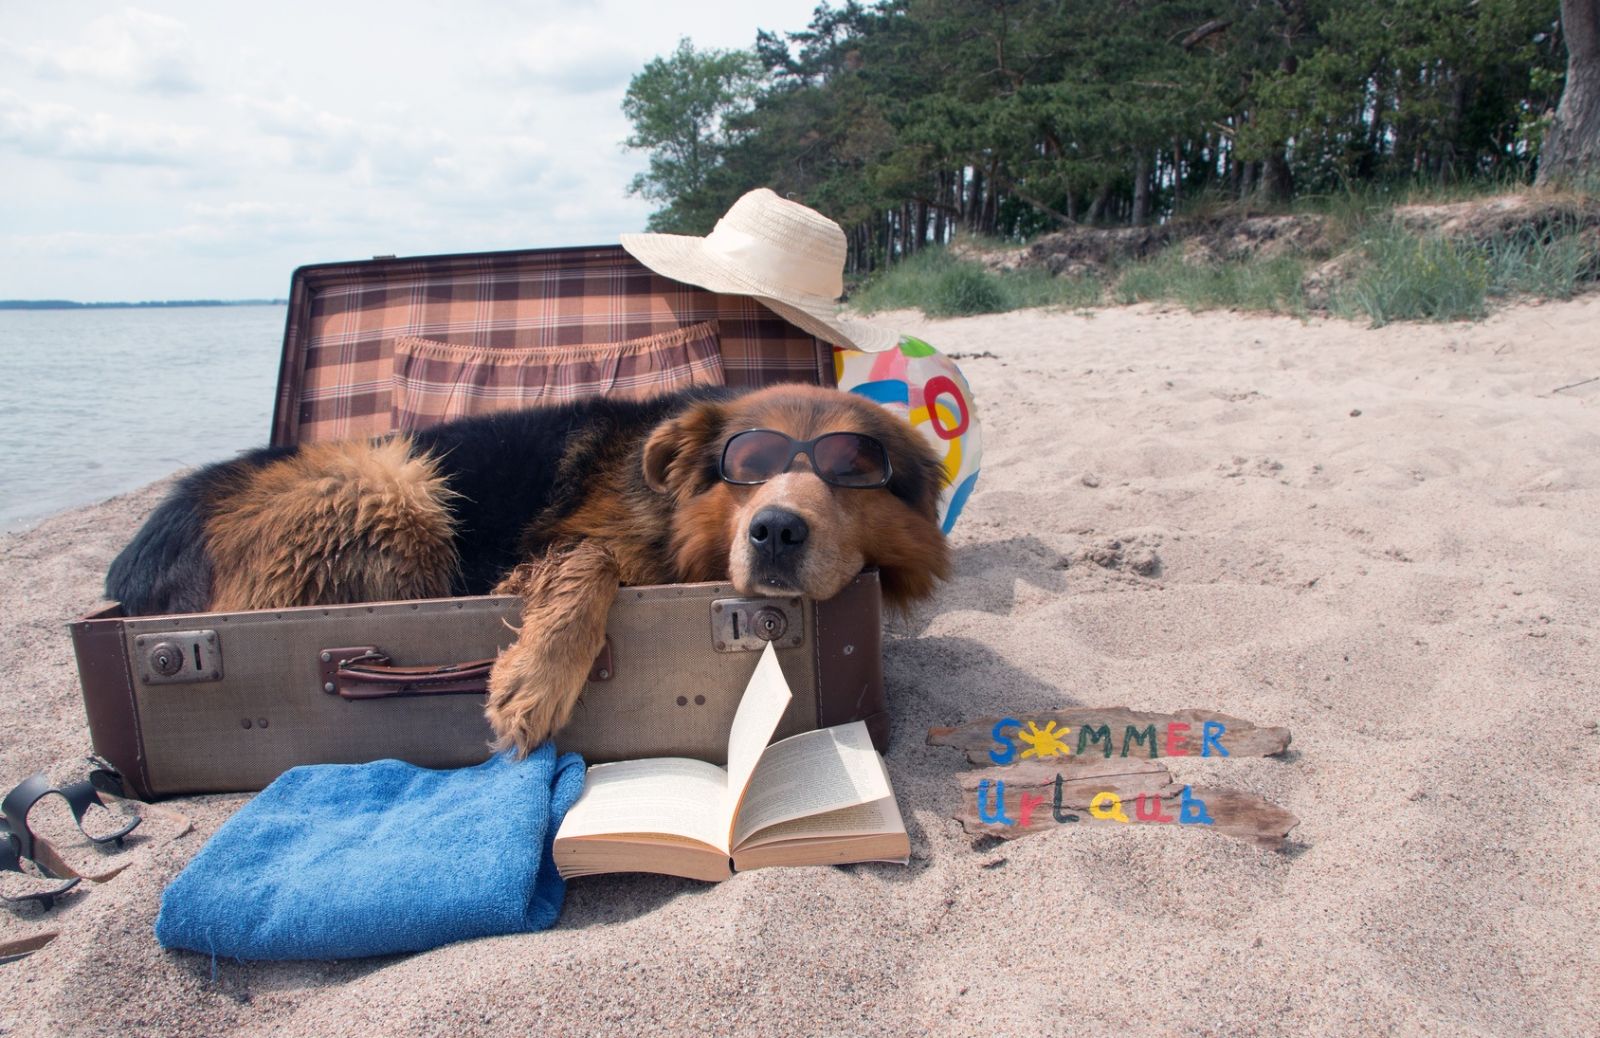 In vacanza col cane: ecco come giocare in spiaggia